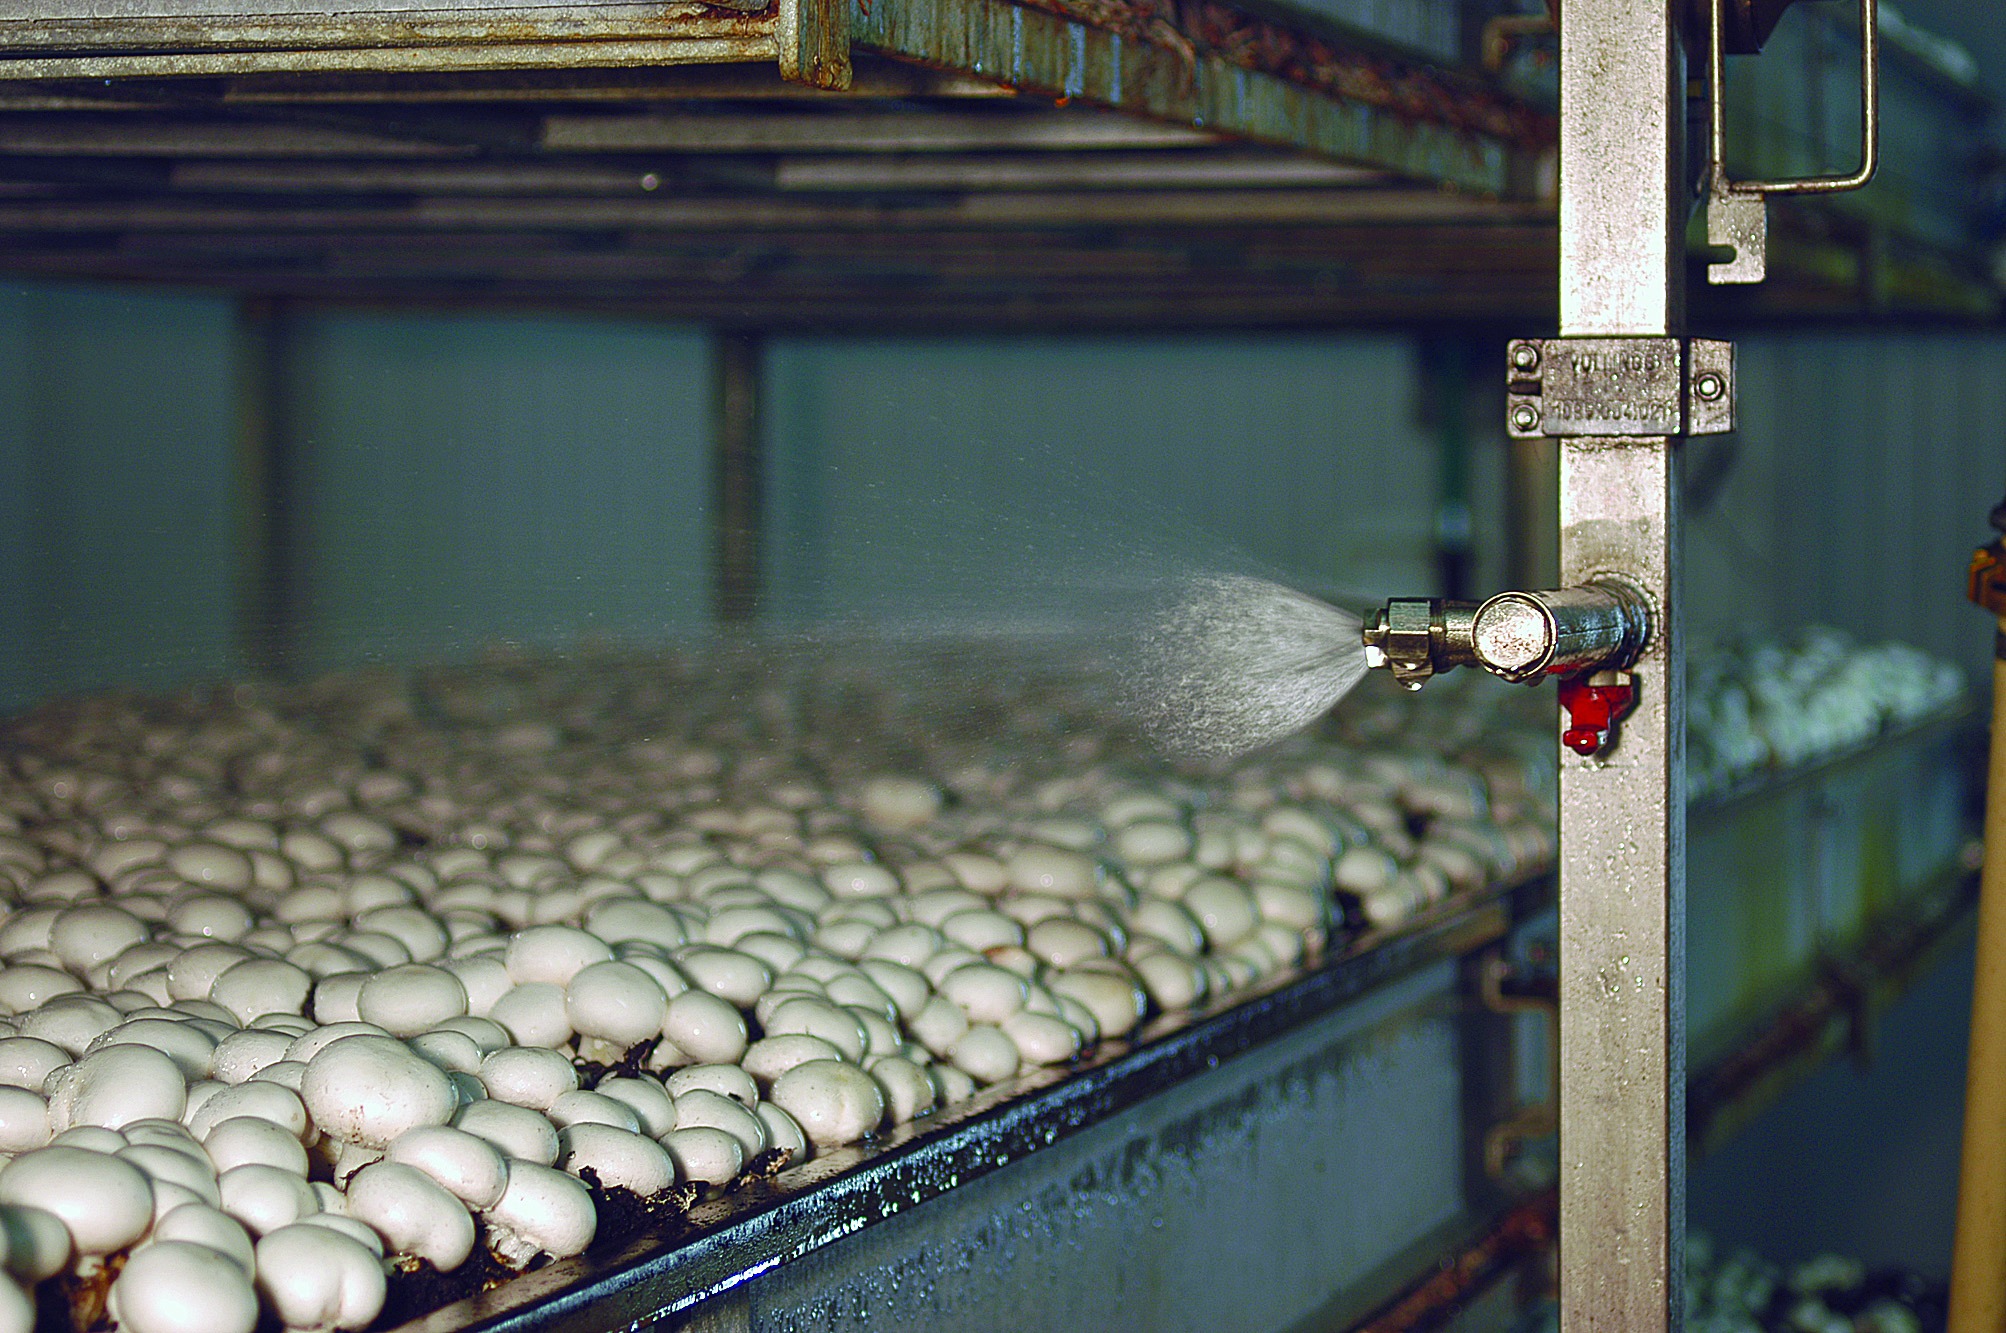 Выращивание грибов технология. Оборудование для грибоводства шампиньоны. Грибная ферма шампиньоны. Грибная ферма вешенка. Ферма шампиньонов вешенок.